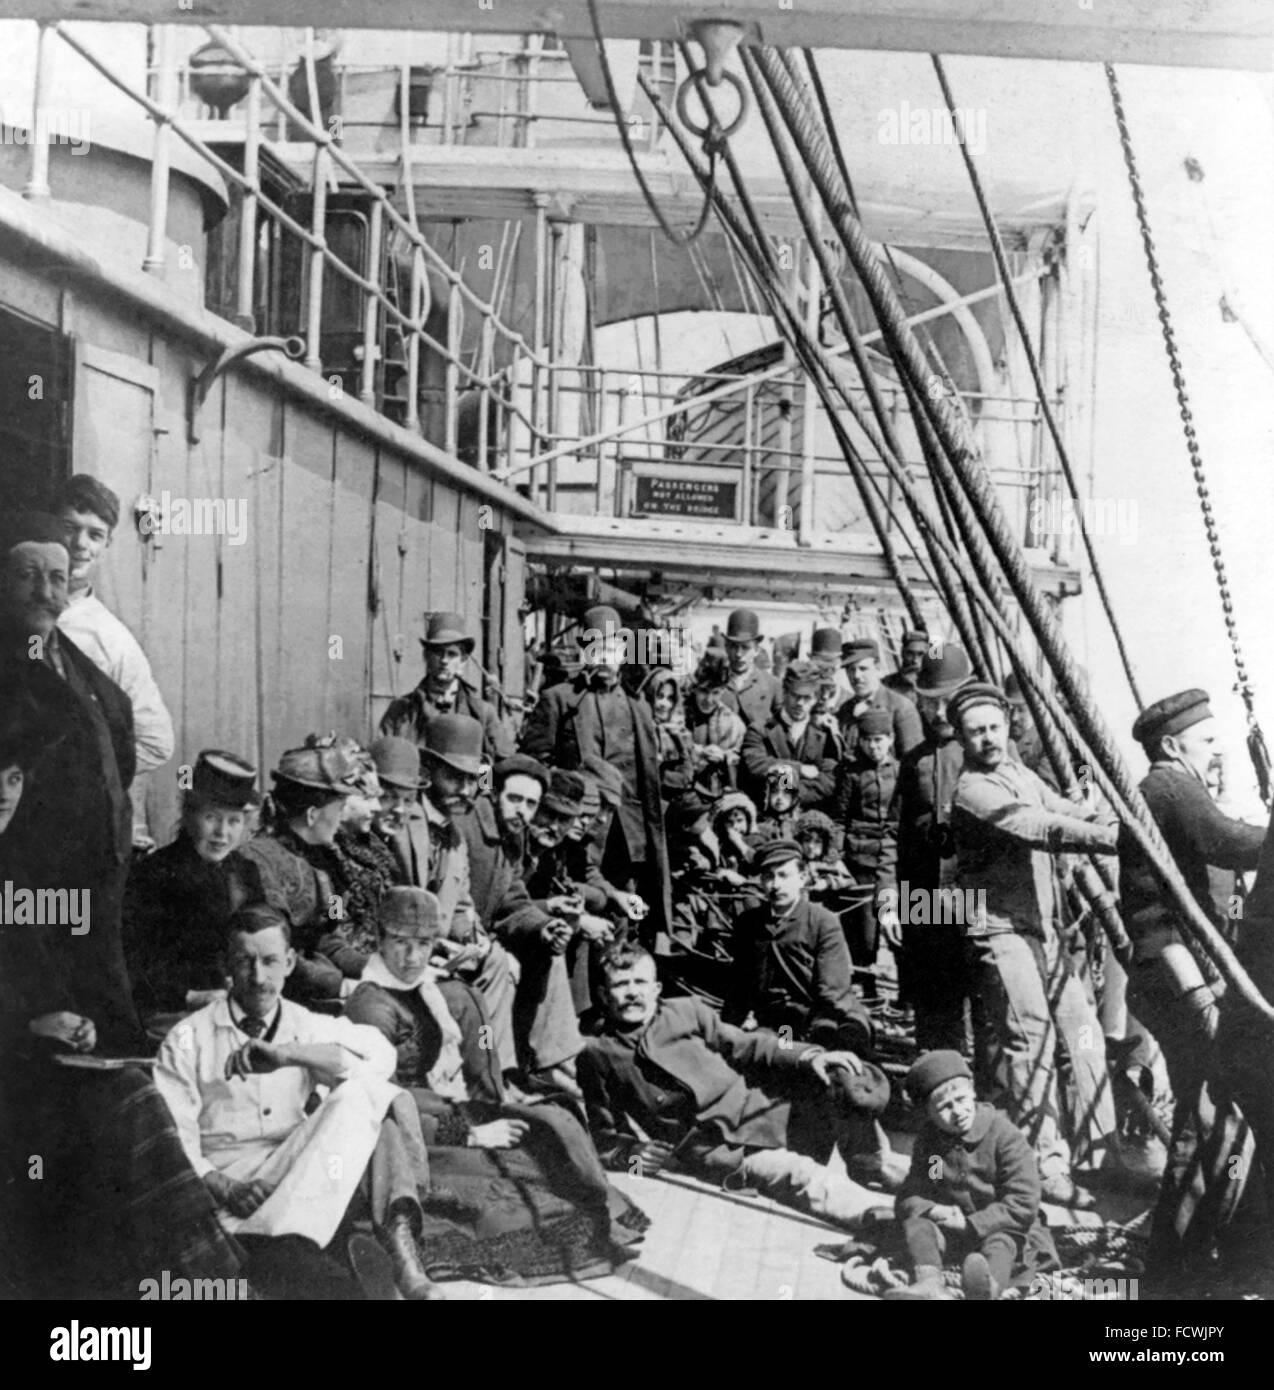 Les émigrants vers les USA sur le pont inférieur d'un navire en mer, c.1890 Banque D'Images